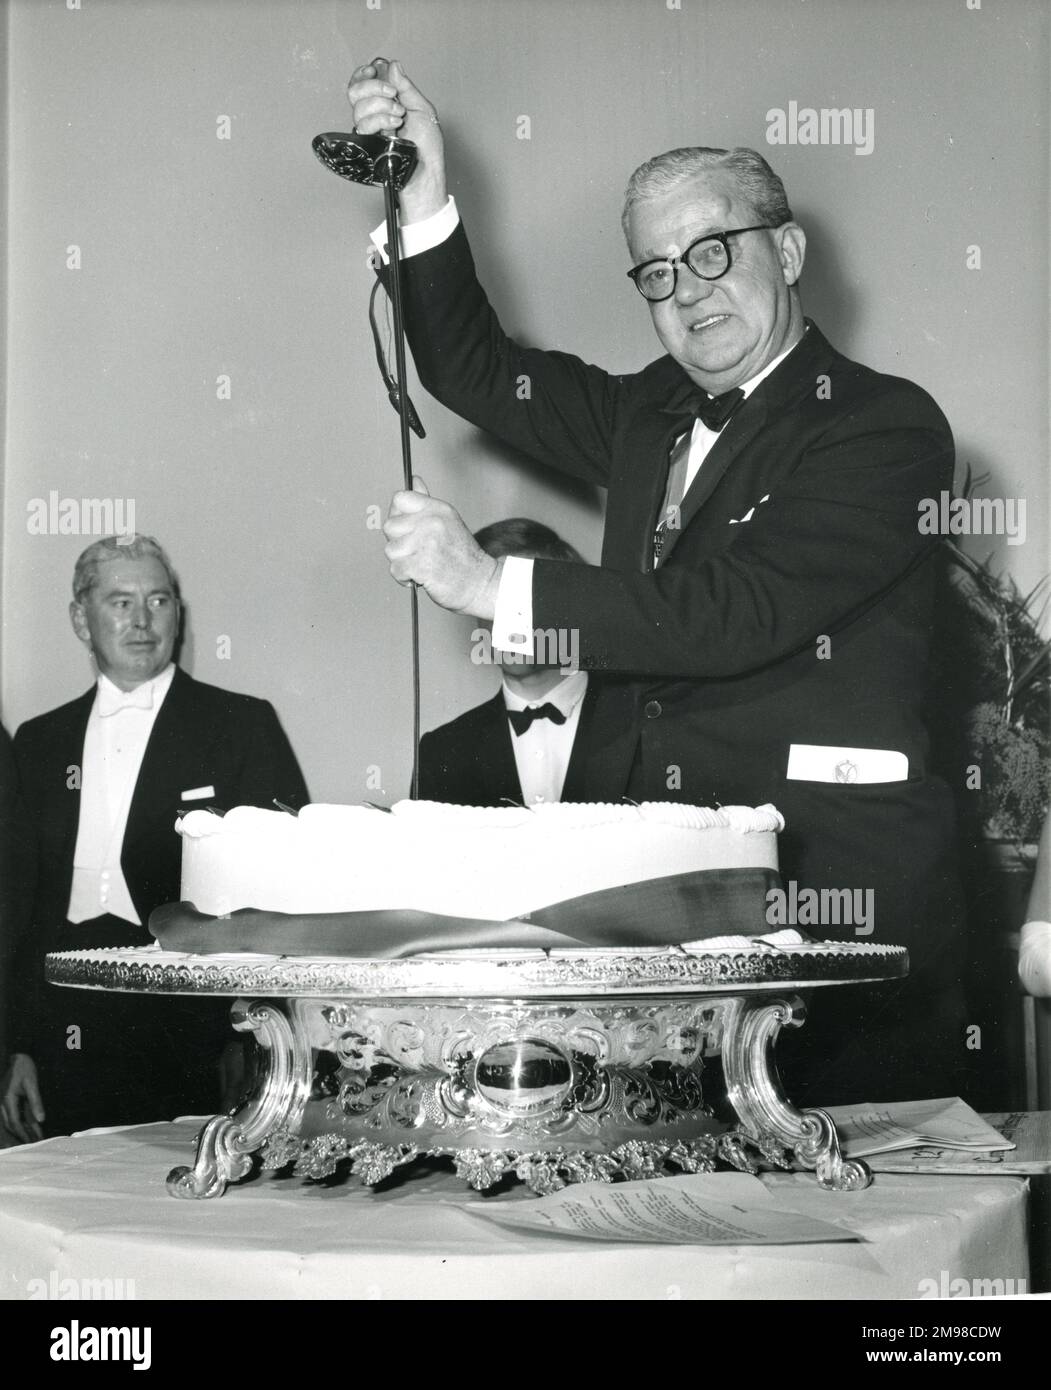 Sir George Gardner, Presidente de Raes 1965-1966, corta el pastel de cumpleaños del centenario con la espada ceremonial que pertenece al General de Brigada Sir Osborne Mance, el miembro más antiguo de la Sociedad, en la Conversación del Centenario celebrada en el Museo de Ciencias el 12 de enero de 1966. Foto de stock